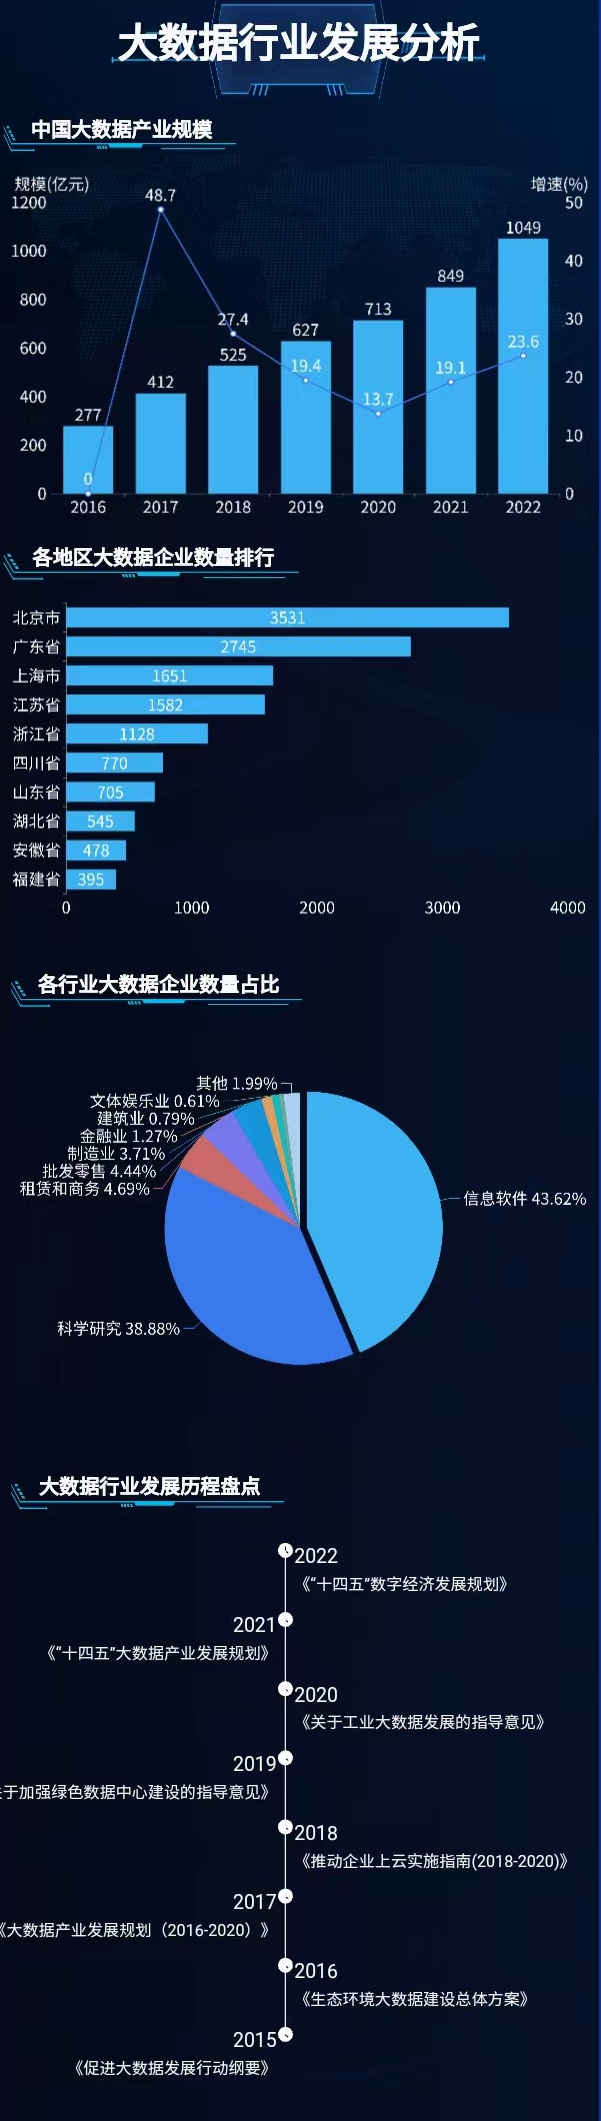 中国大数据产业的发展前景-迪赛智慧数